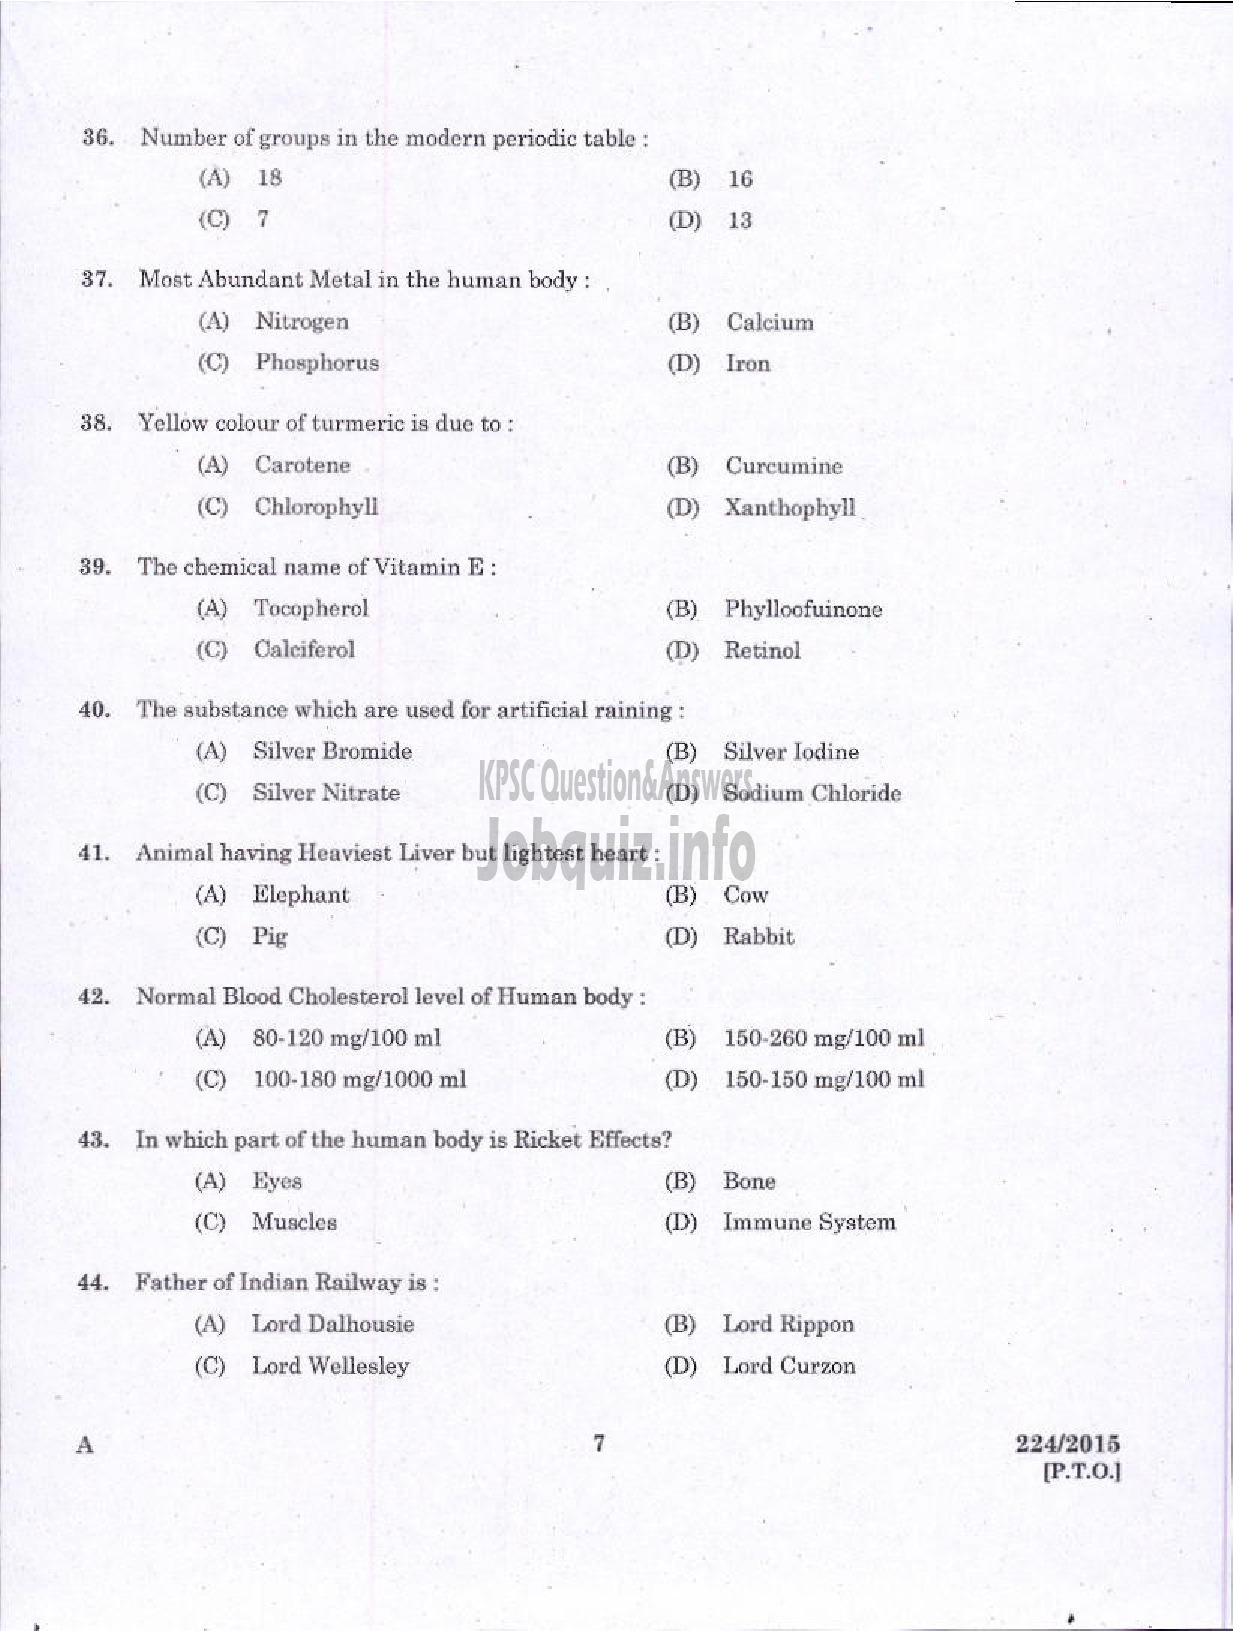 Kerala PSC Question Paper - WOMEN POLICE CONSTABLE / POLICE CONSTABLE APB NCA POLICE-5